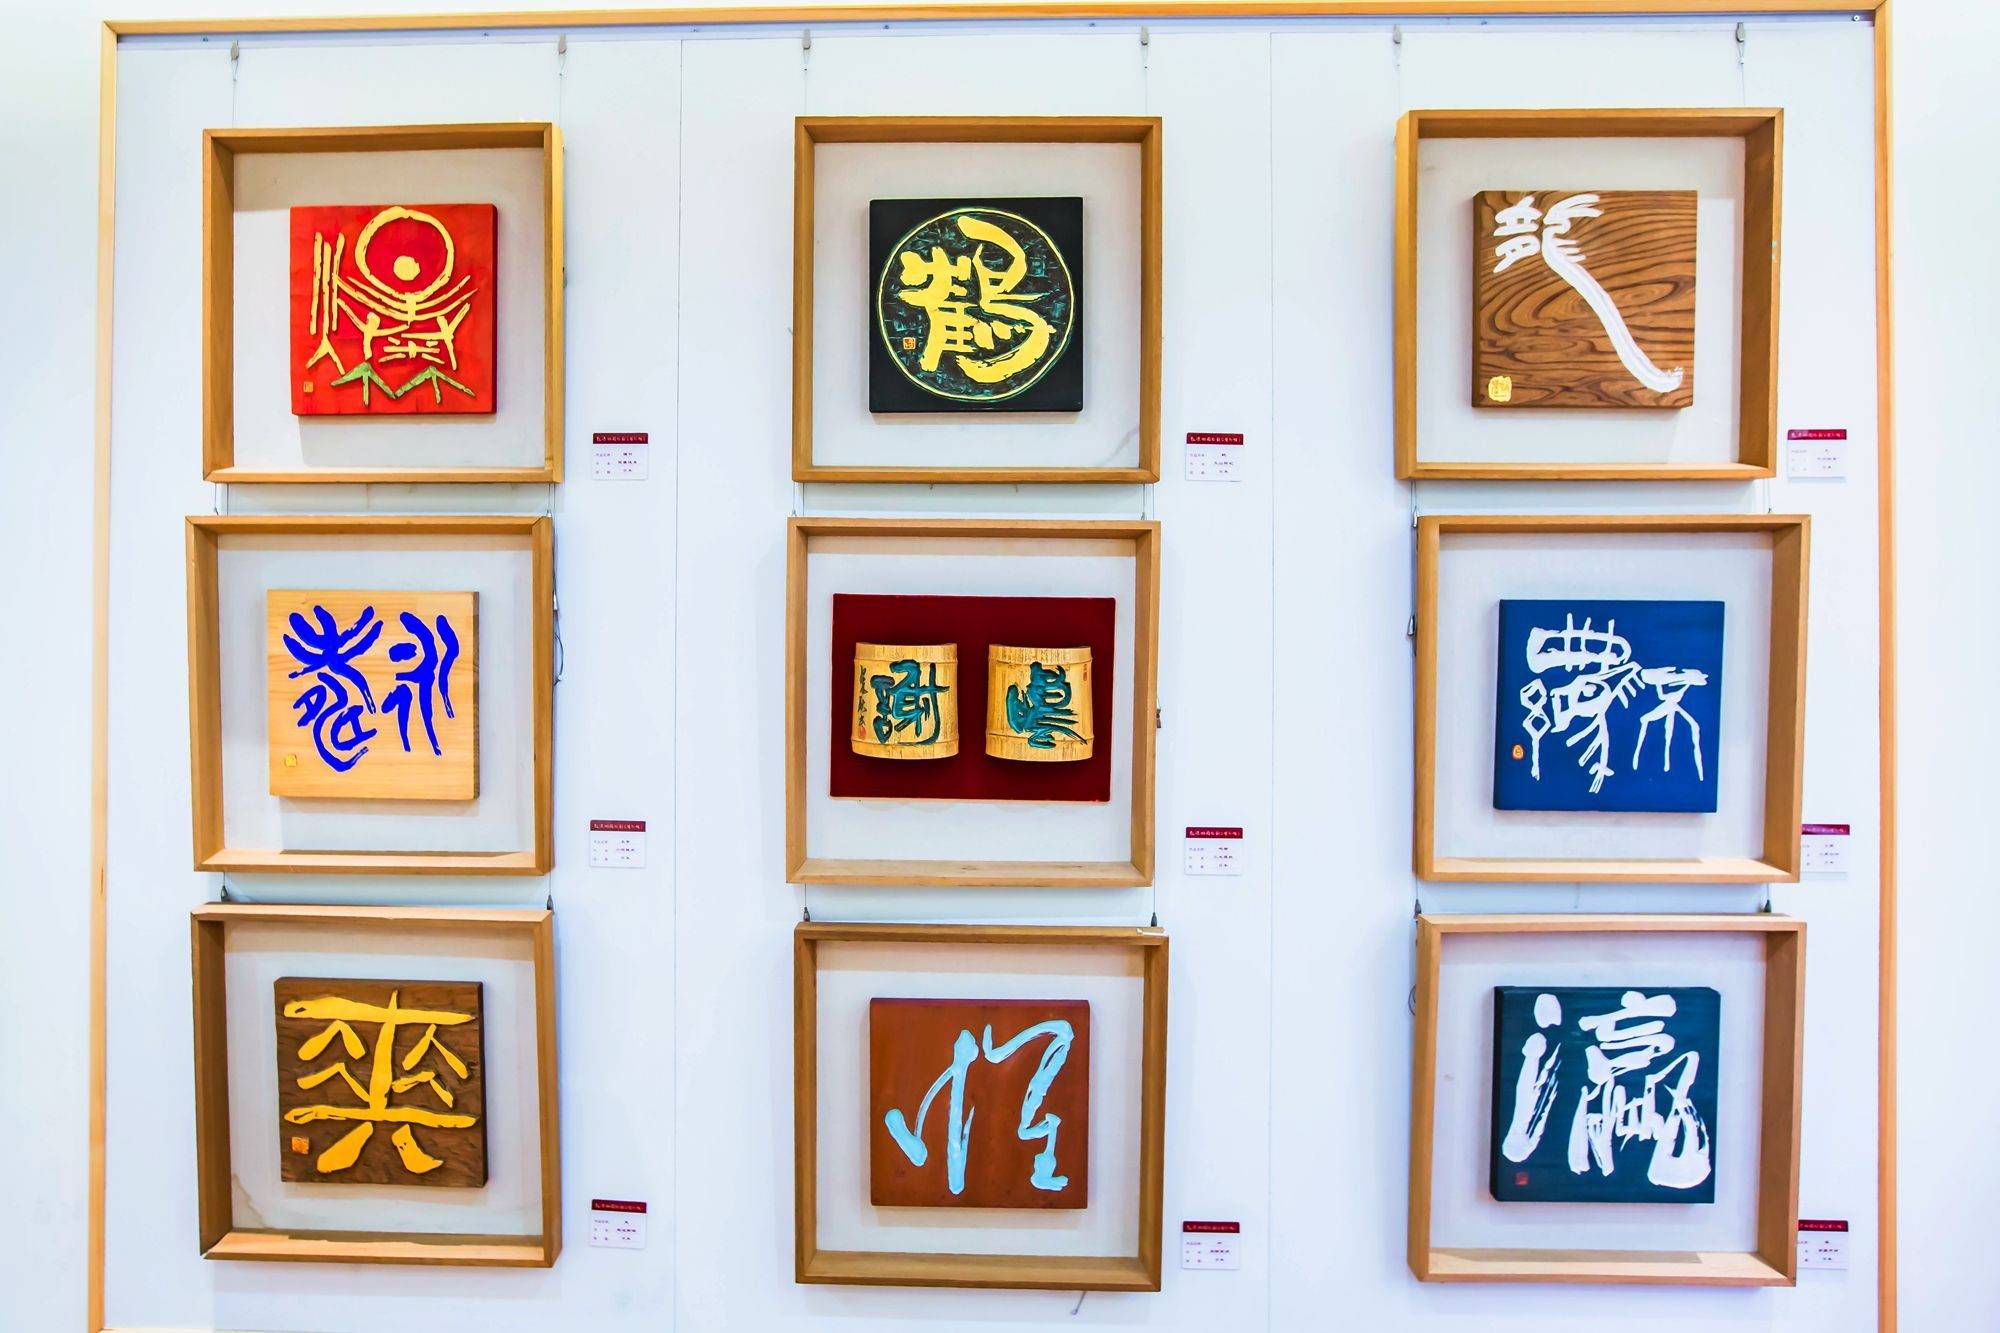 鼓浪屿国际刻字艺术馆,国内唯一的刻字艺术馆,各个作品惊艳绝美